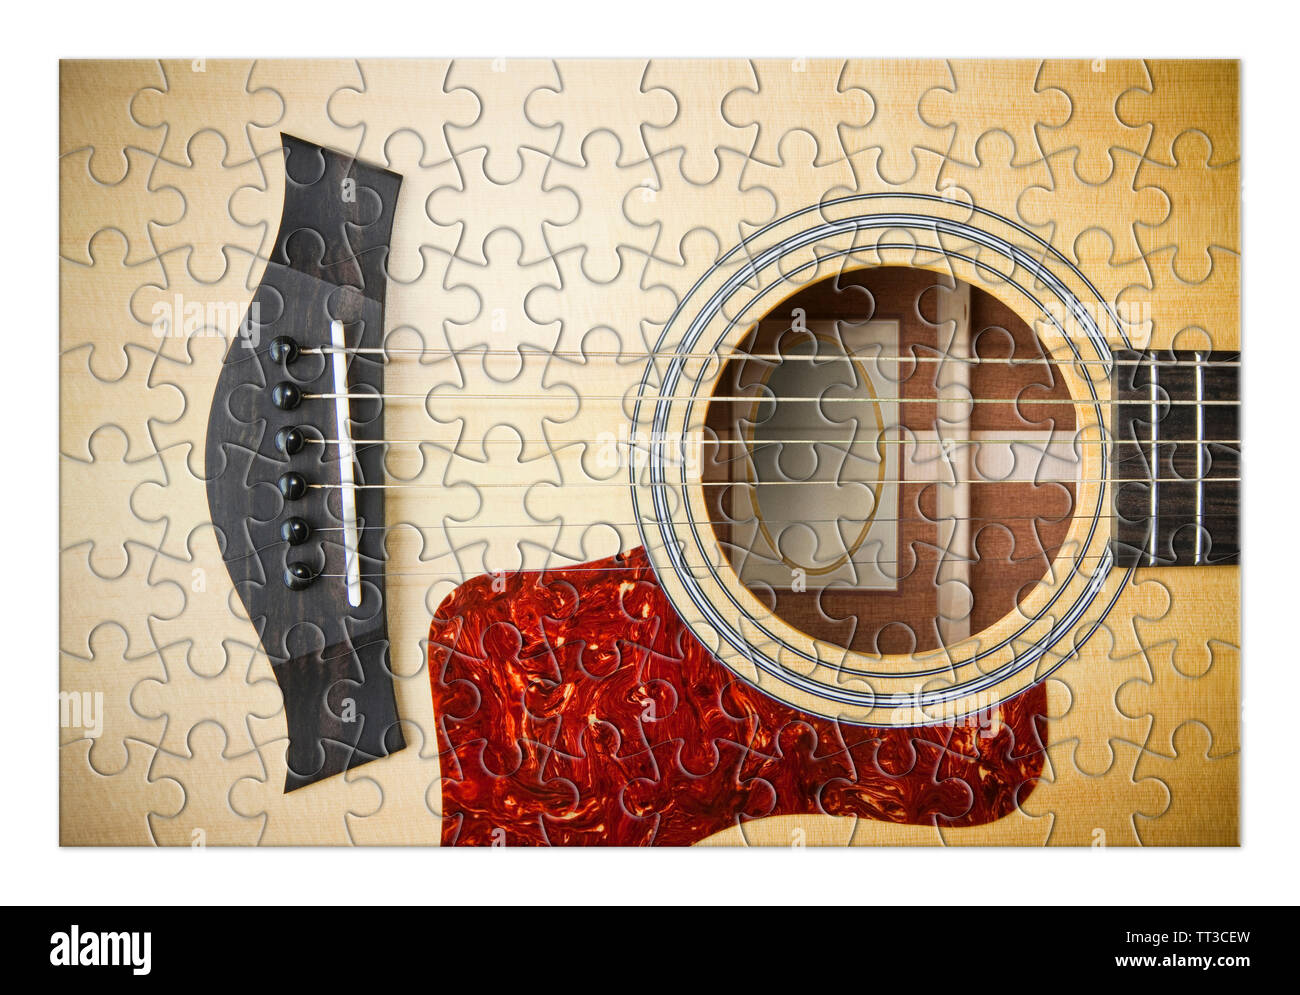 Geduld und Leidenschaft zu lernen Schritt für Schritt die Gitarre zu  spielen - Konzept Bild im Puzzle Form Stockfotografie - Alamy